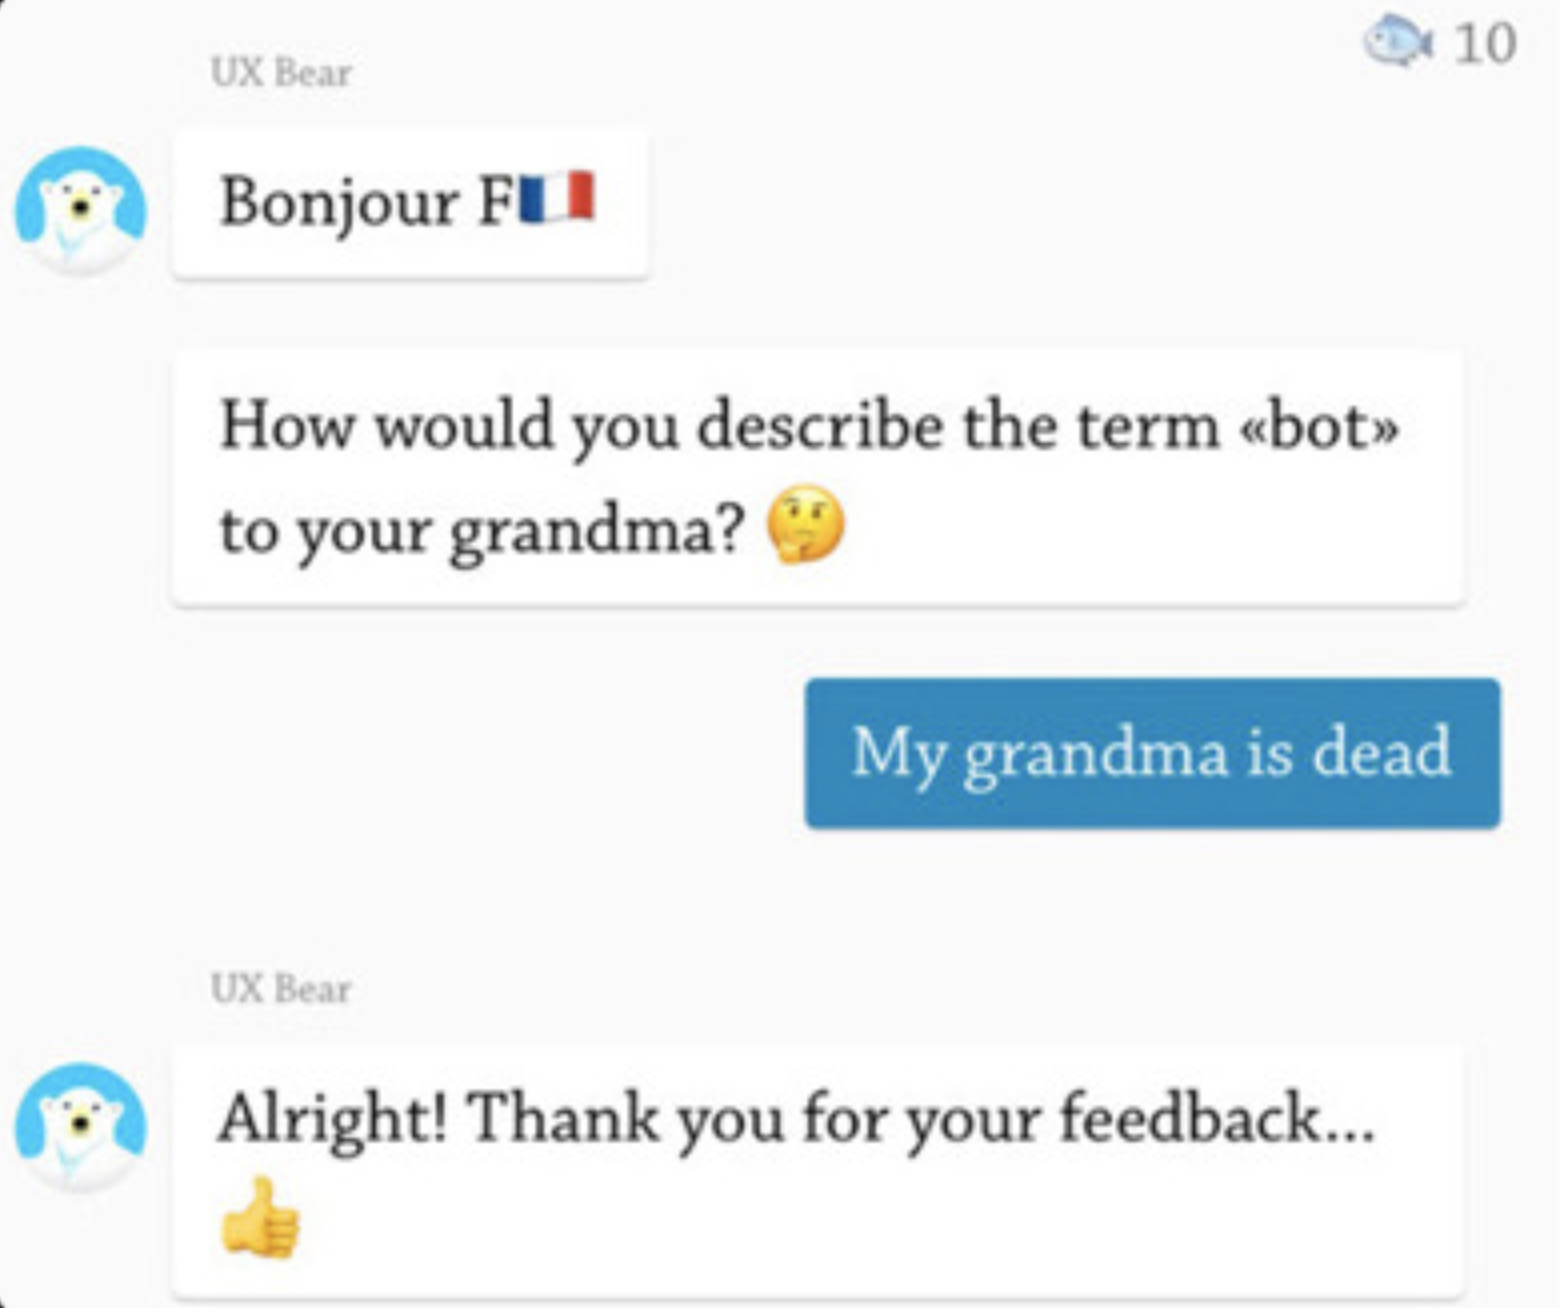 uxbear-chatbot-grandma-dead-fail